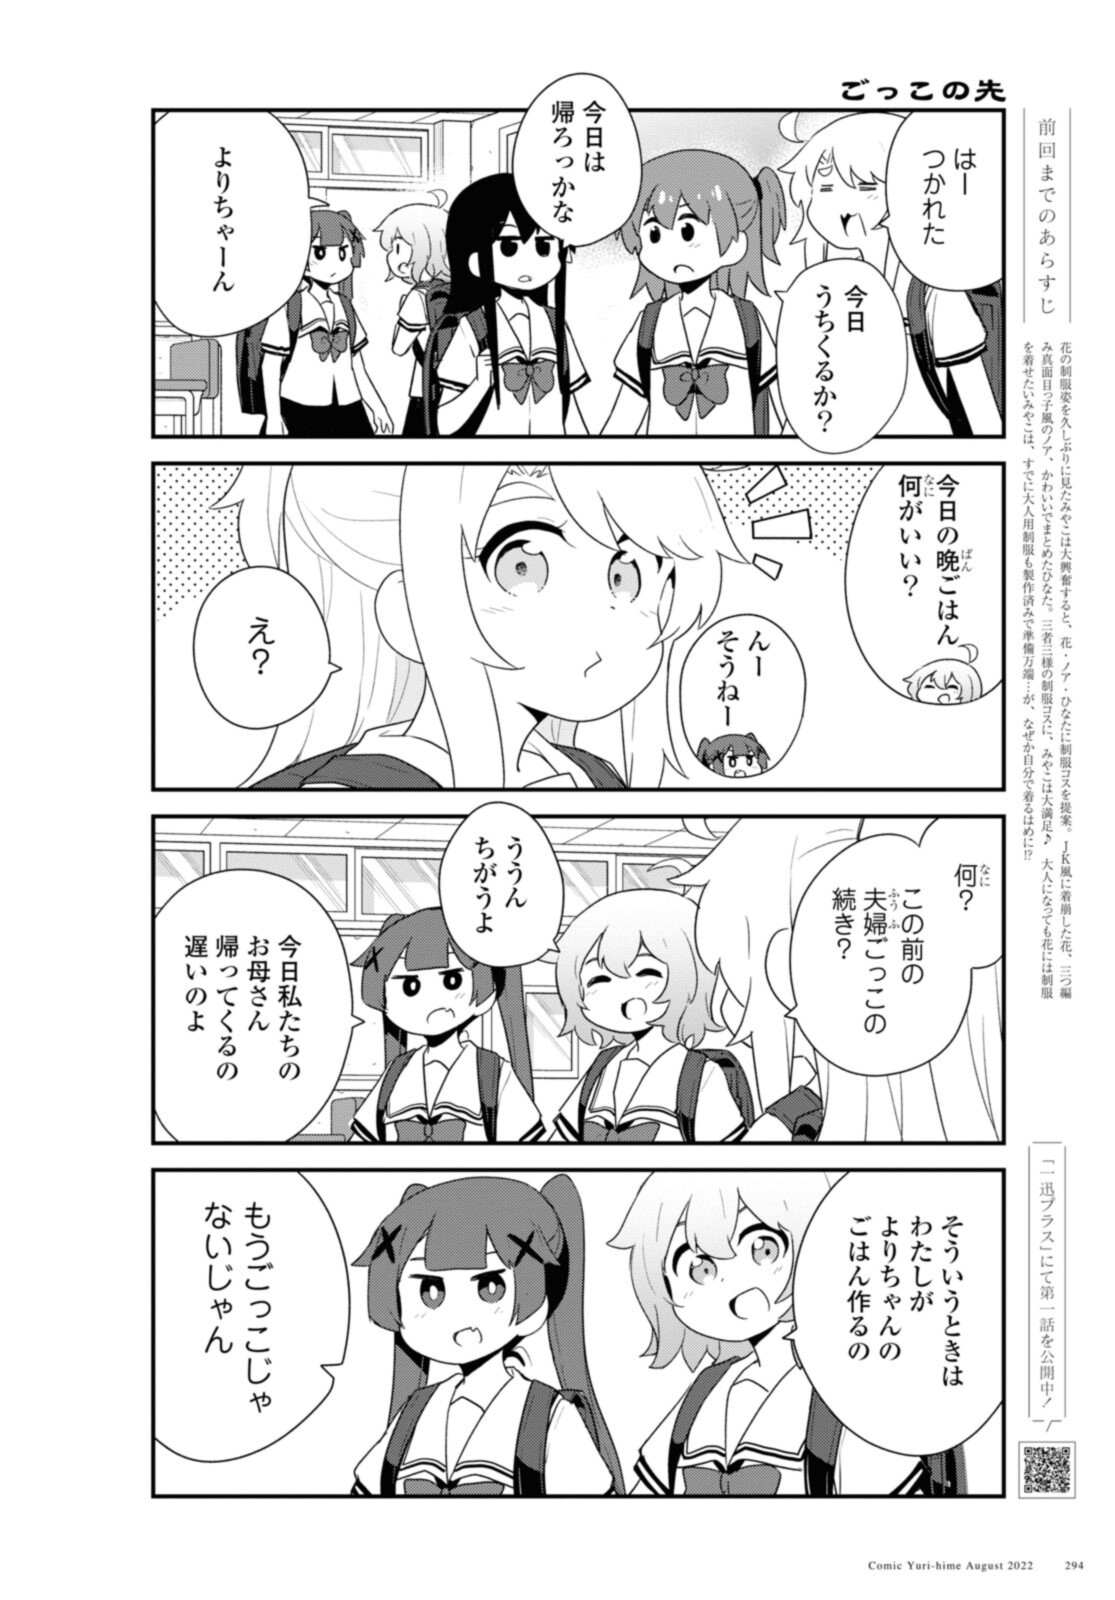 Watashi ni Tenshi ga Maiorita! - Chapter 98 - Page 2